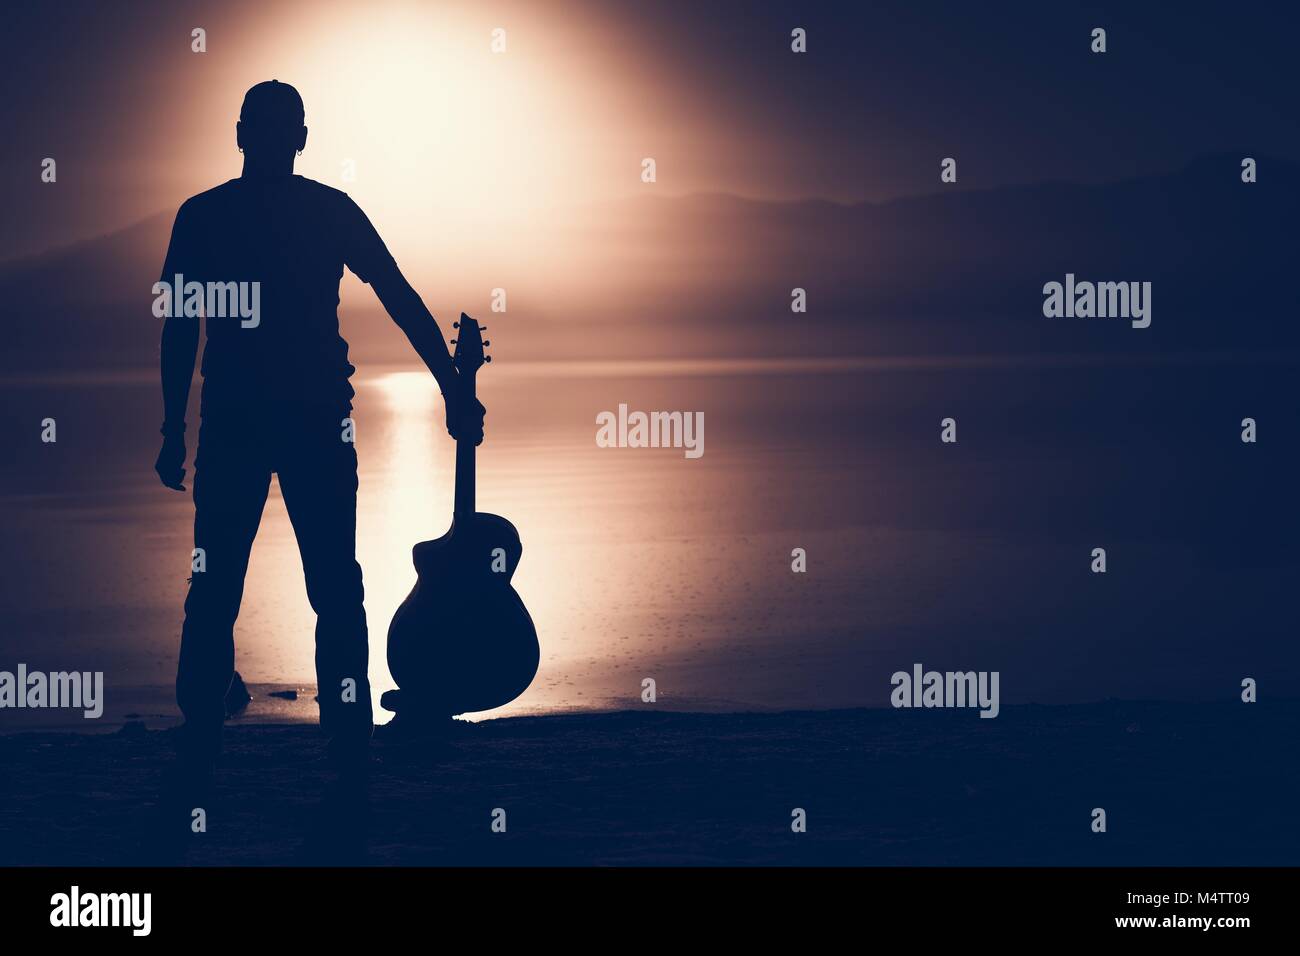 Gitarrist mit akustischer Gitarre Sonnenuntergang Silhouette Konzept Foto mit der rechten Seite kopieren. Stockfoto